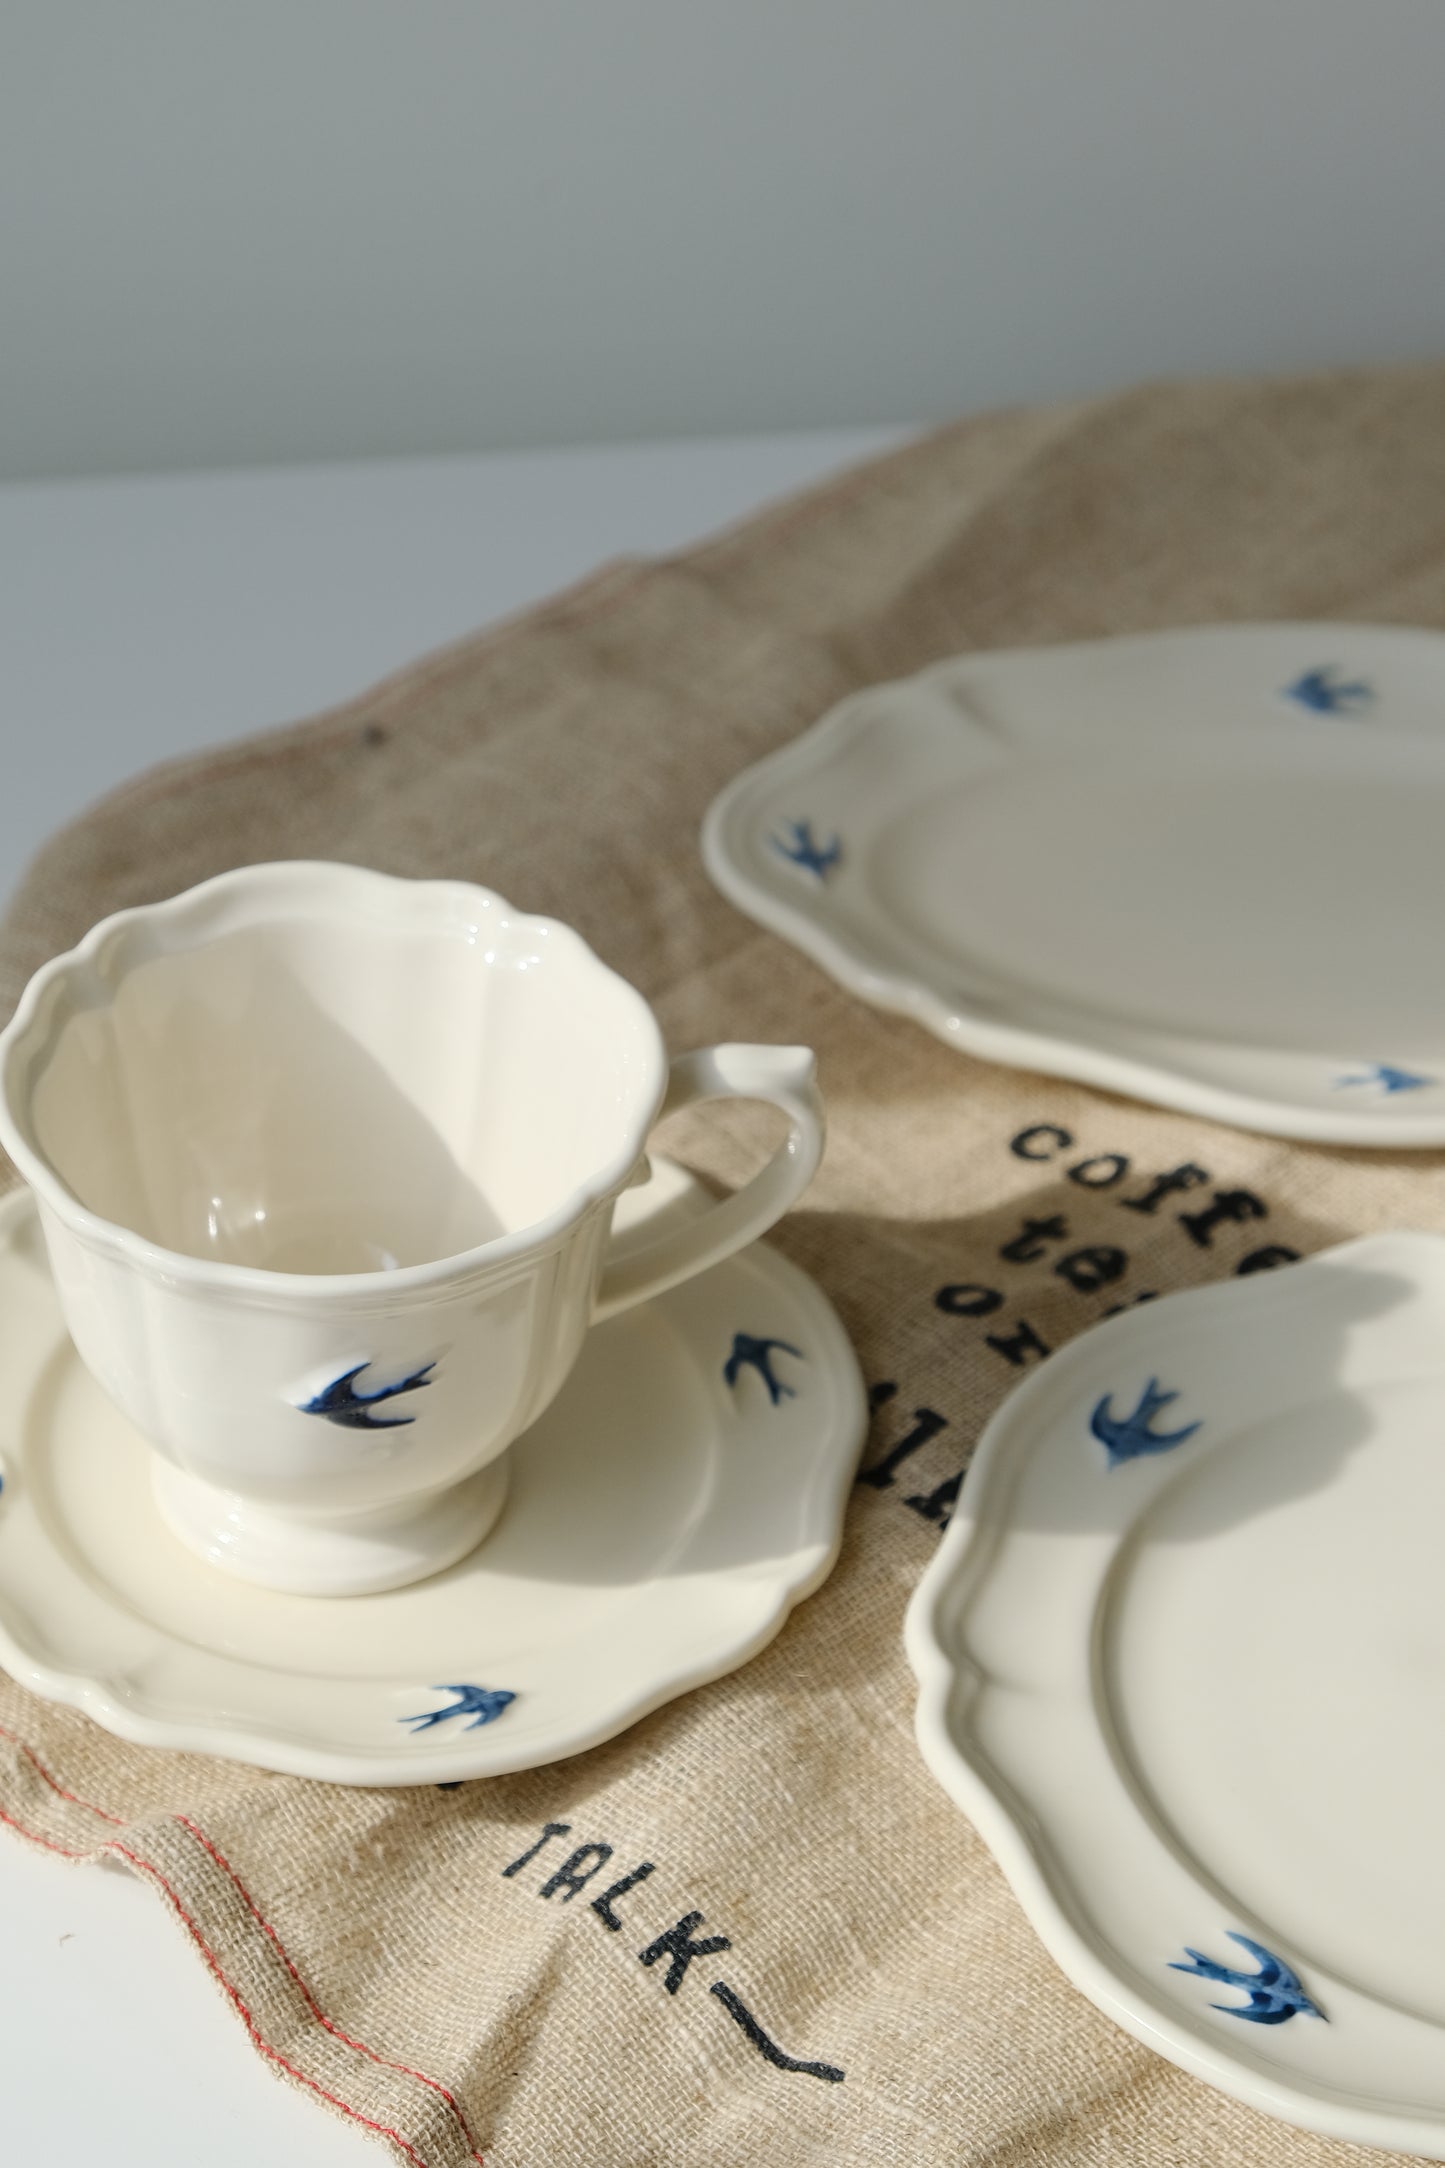 Studio M' Early Bird Collection Plates and Mug